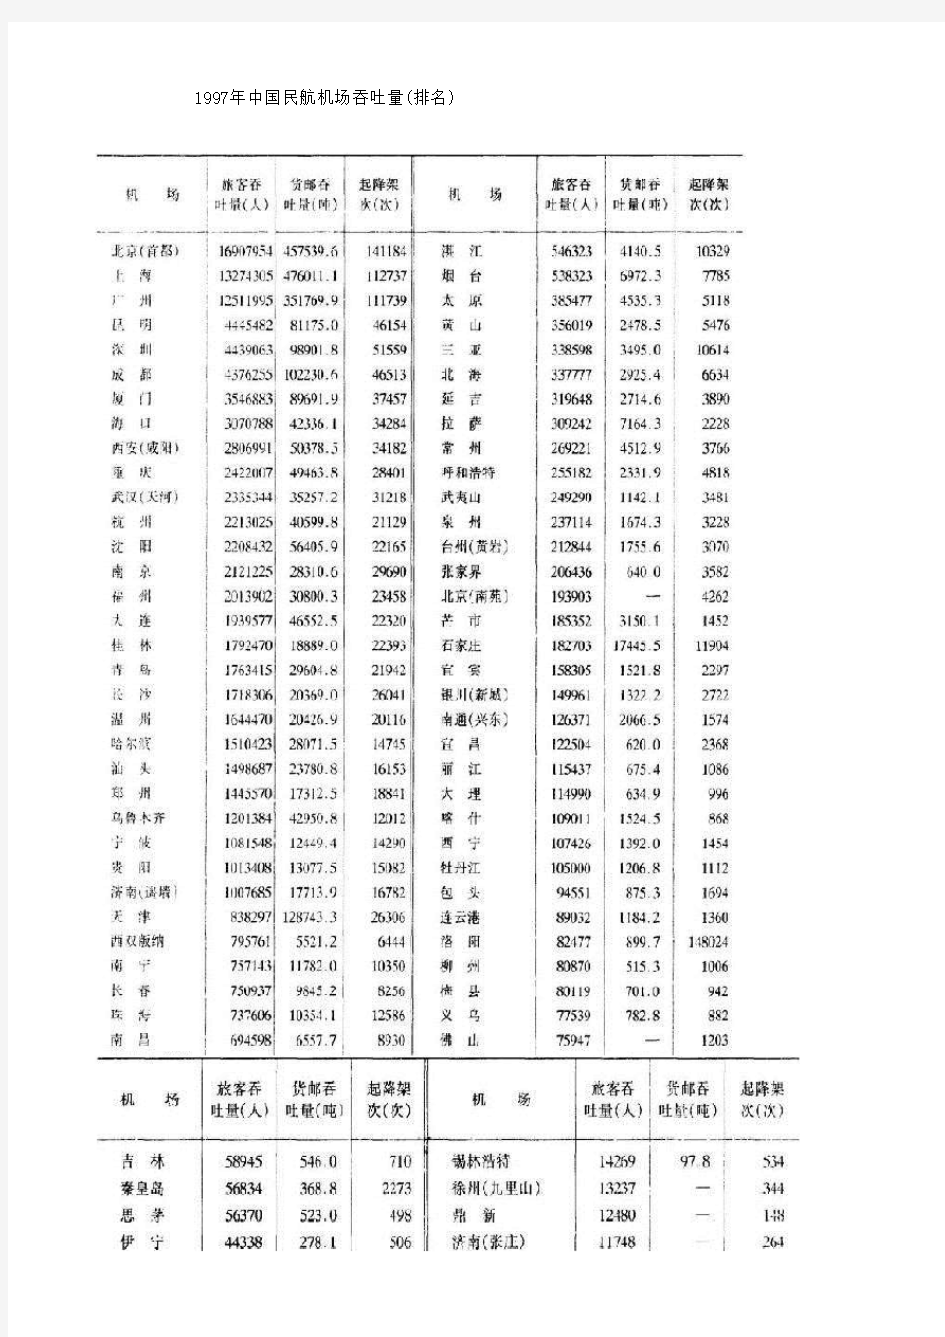 1997-2001年中国民航机场吞吐量排名